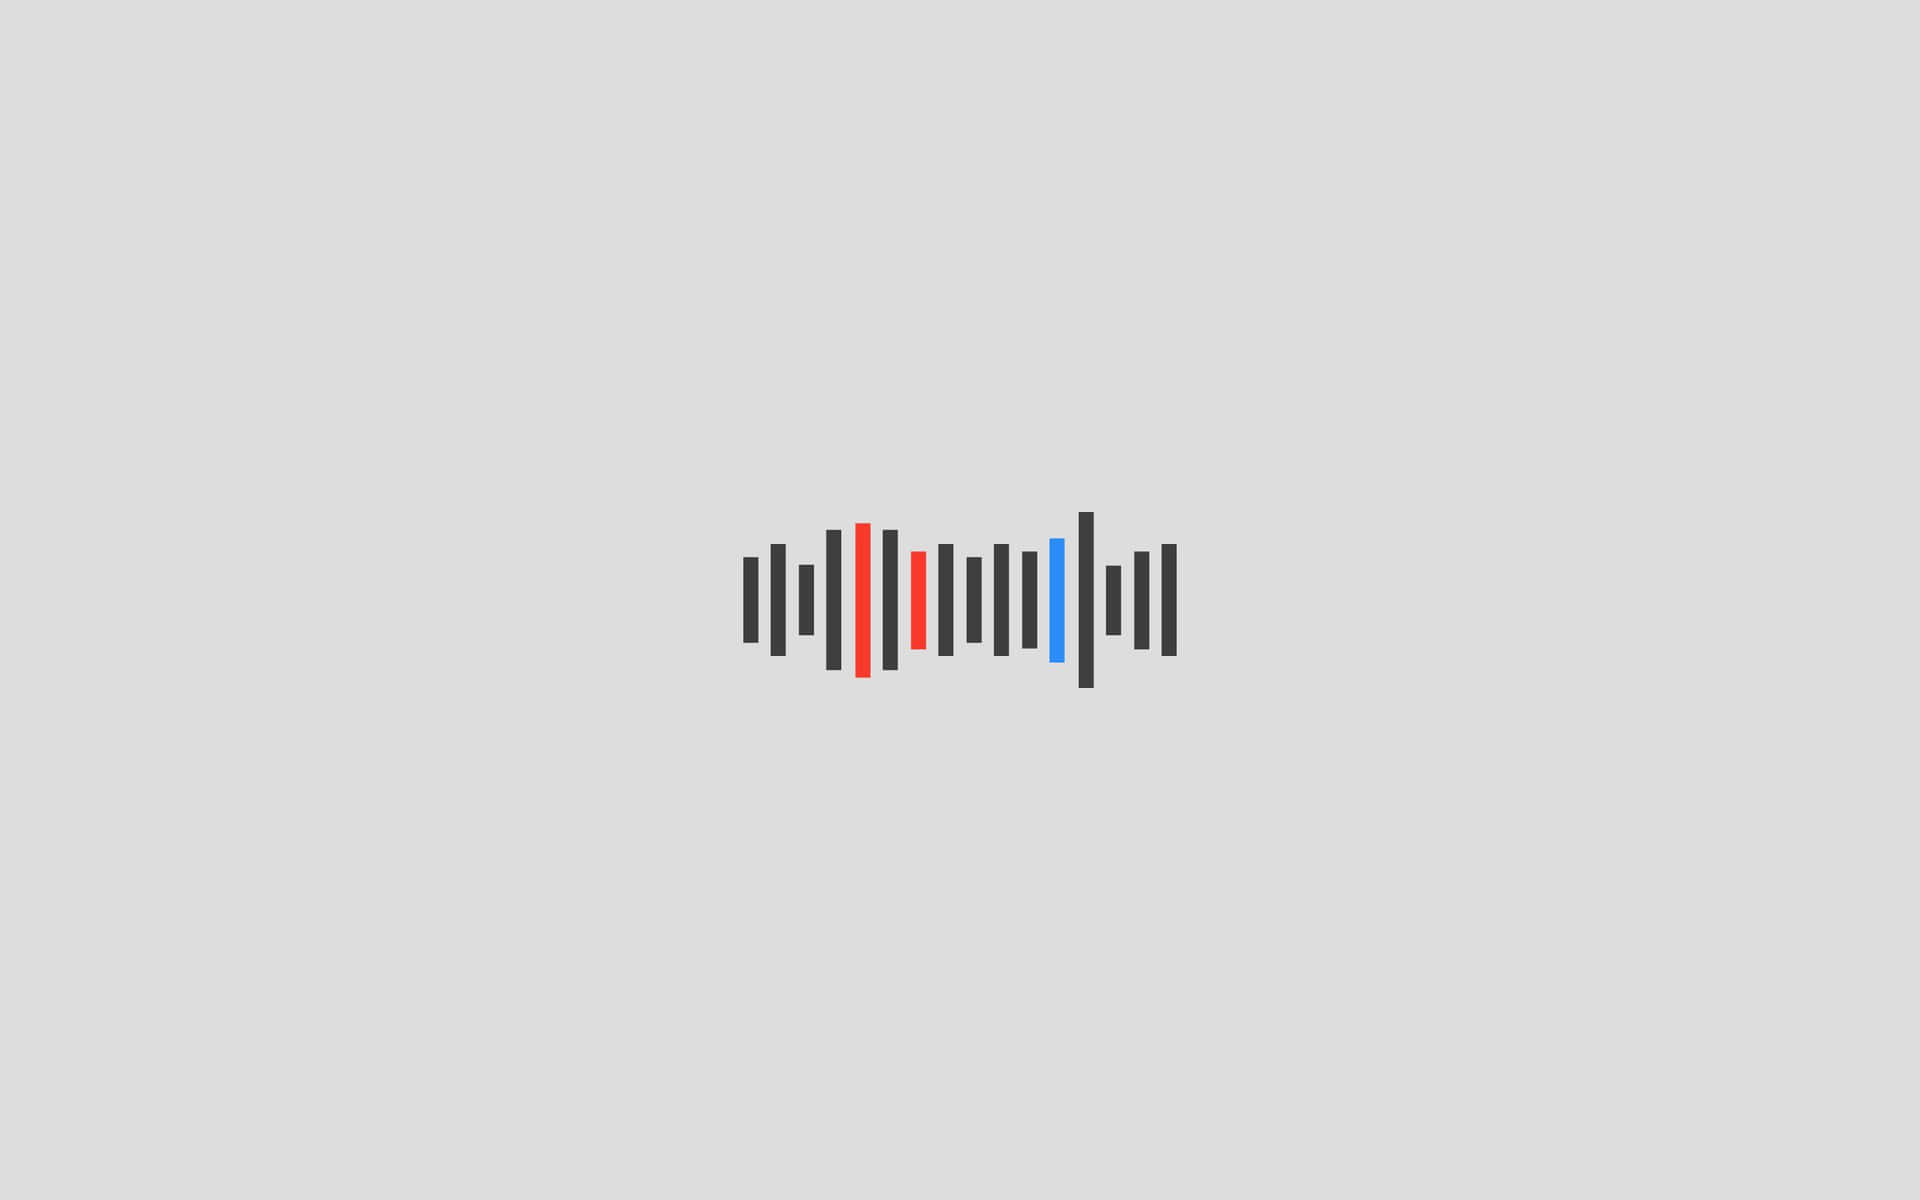 Audio Waveform Graphic Background